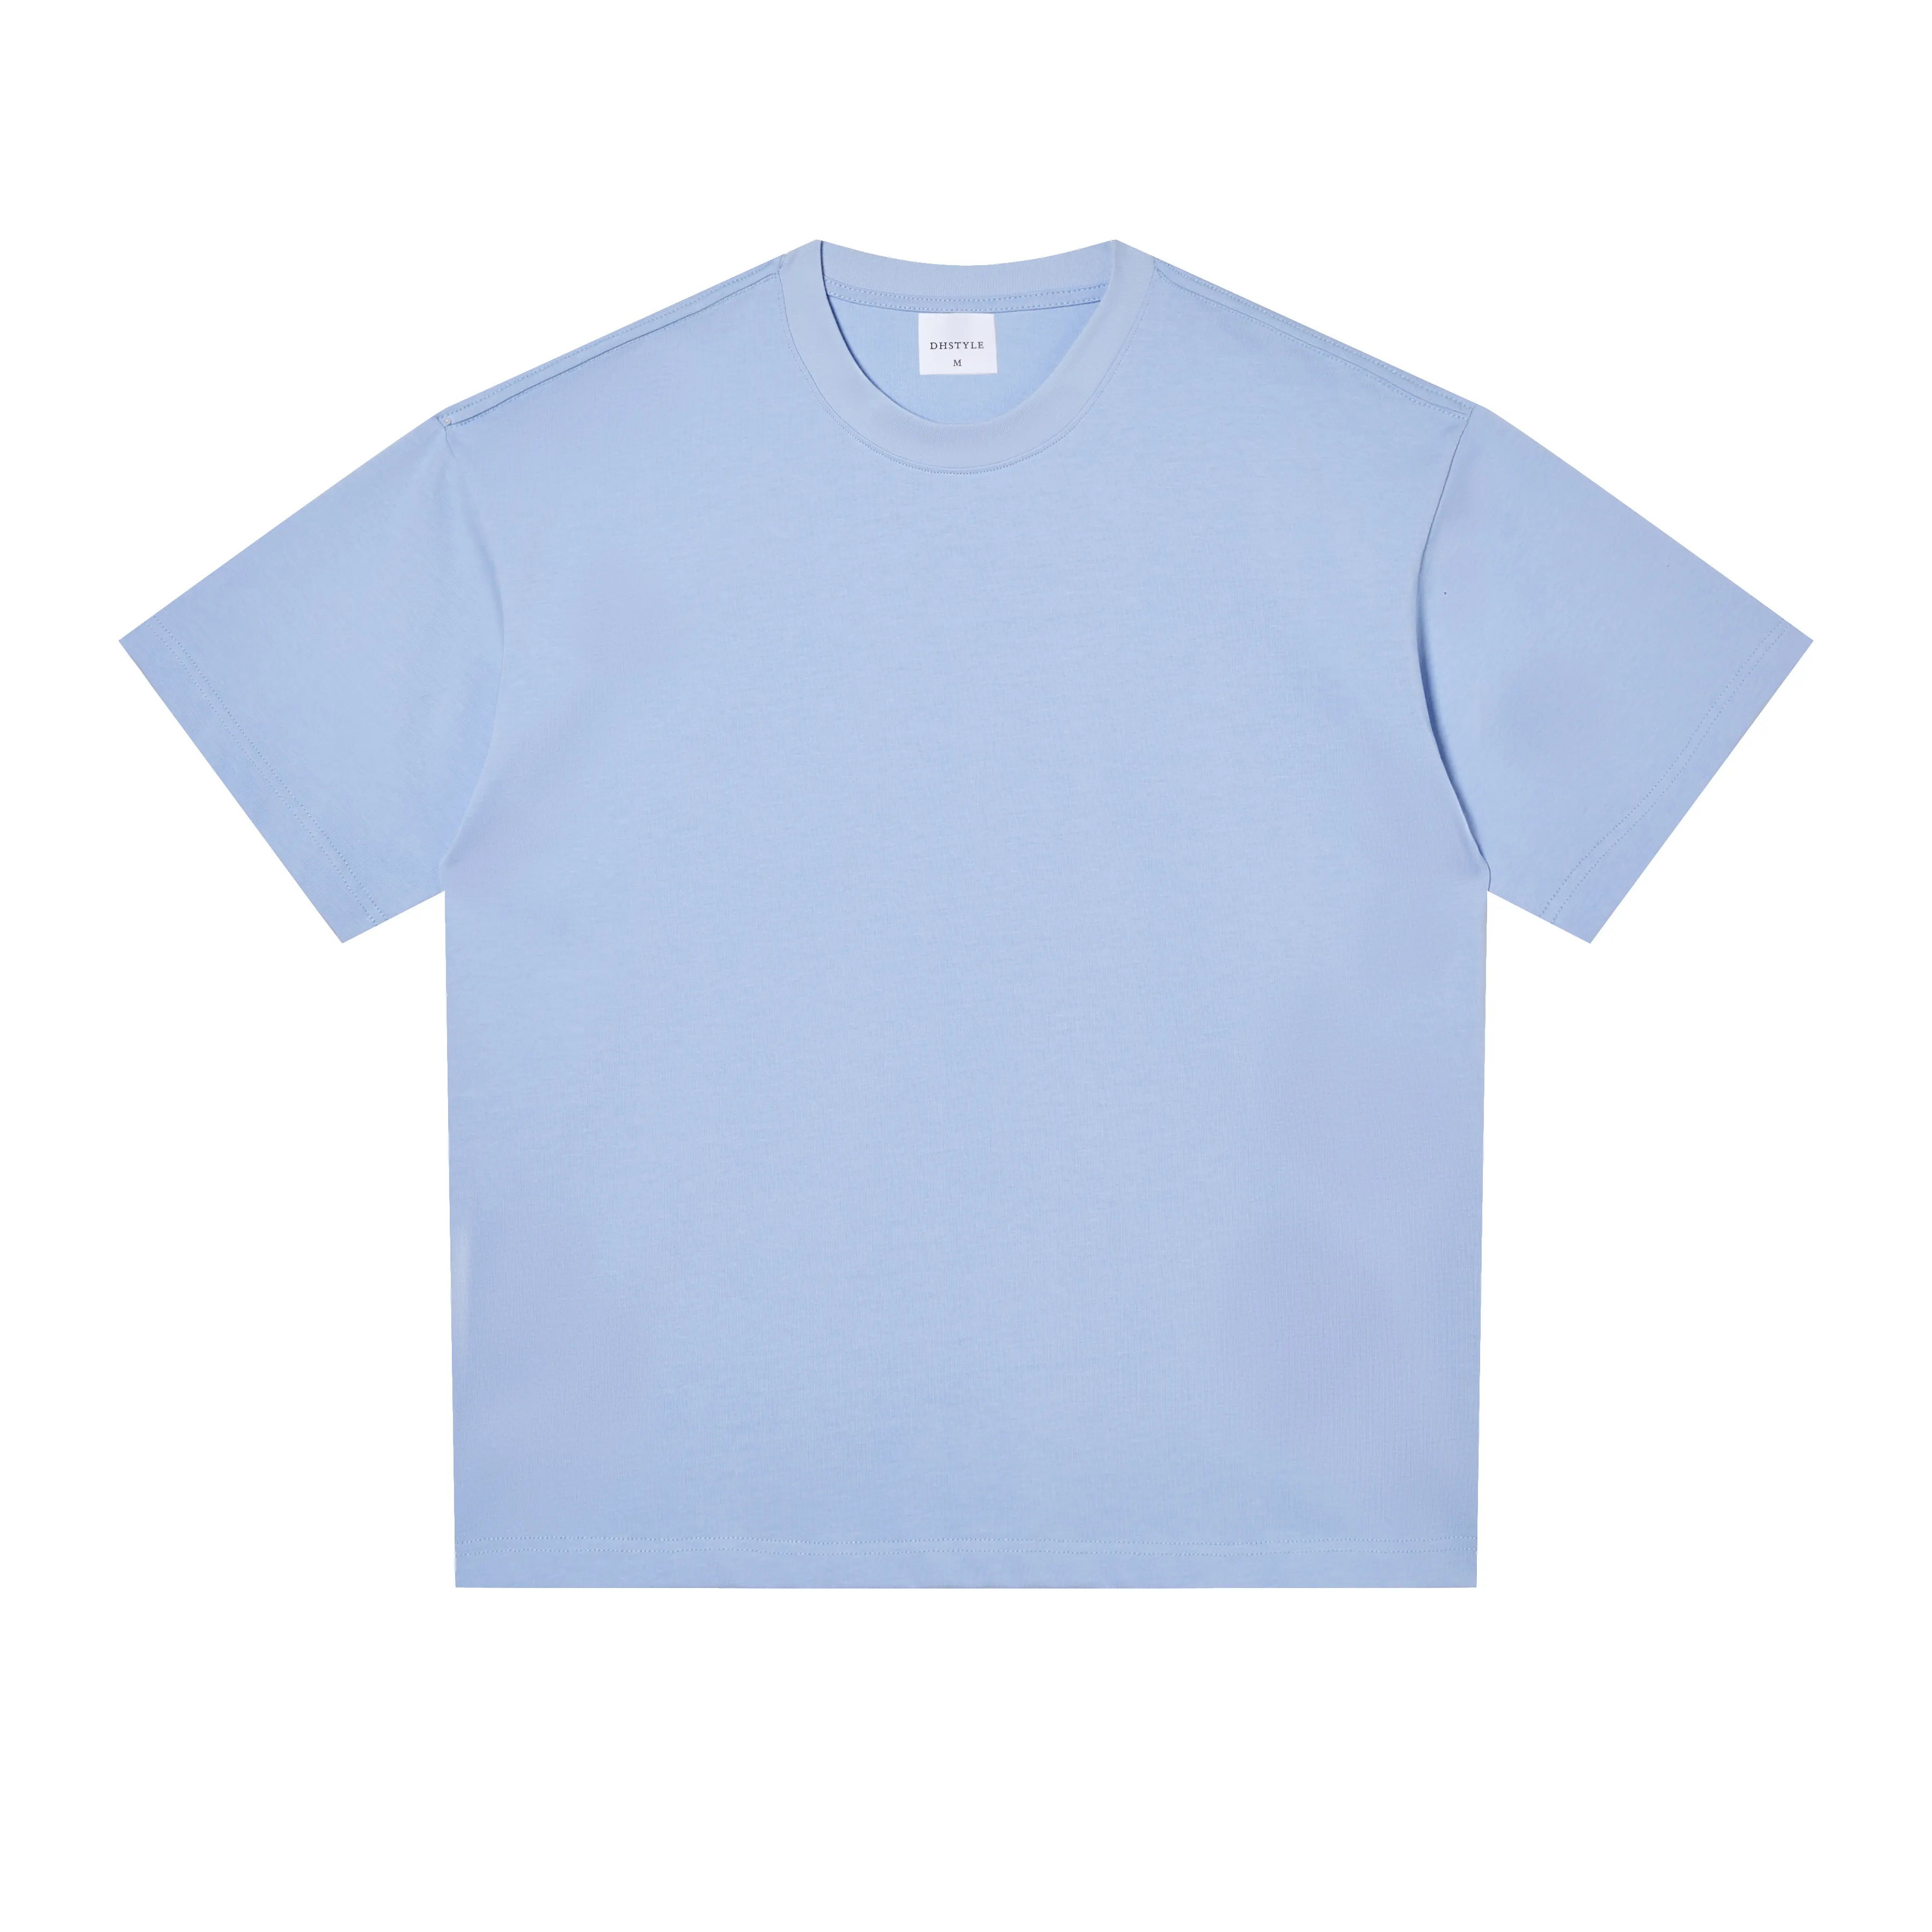 270GSM-Werk hochwertig Großhandel 100 % Baumwolle Gefühl Polyester-T-Shirts individueller Druck weiß schwarz blau einfarbiges T-Shirt